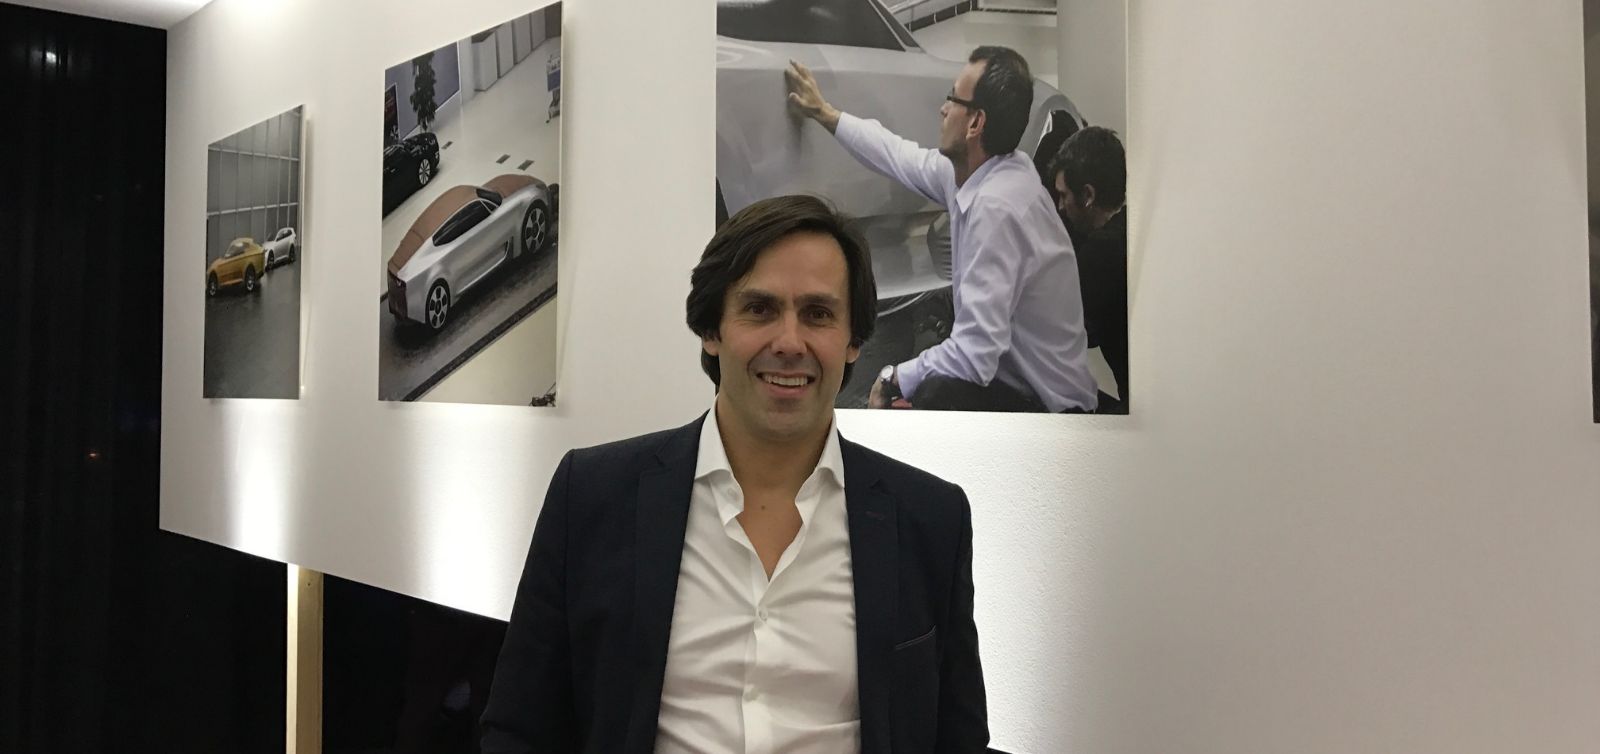  Artur Martins, Vice President Marketing & Product Planning di Kia Motors Europe a Milano in occasione della presentazione della Stinger. Arriverà nel quarto trimestre 2017 e costerà attorno ai 40 mila euro.